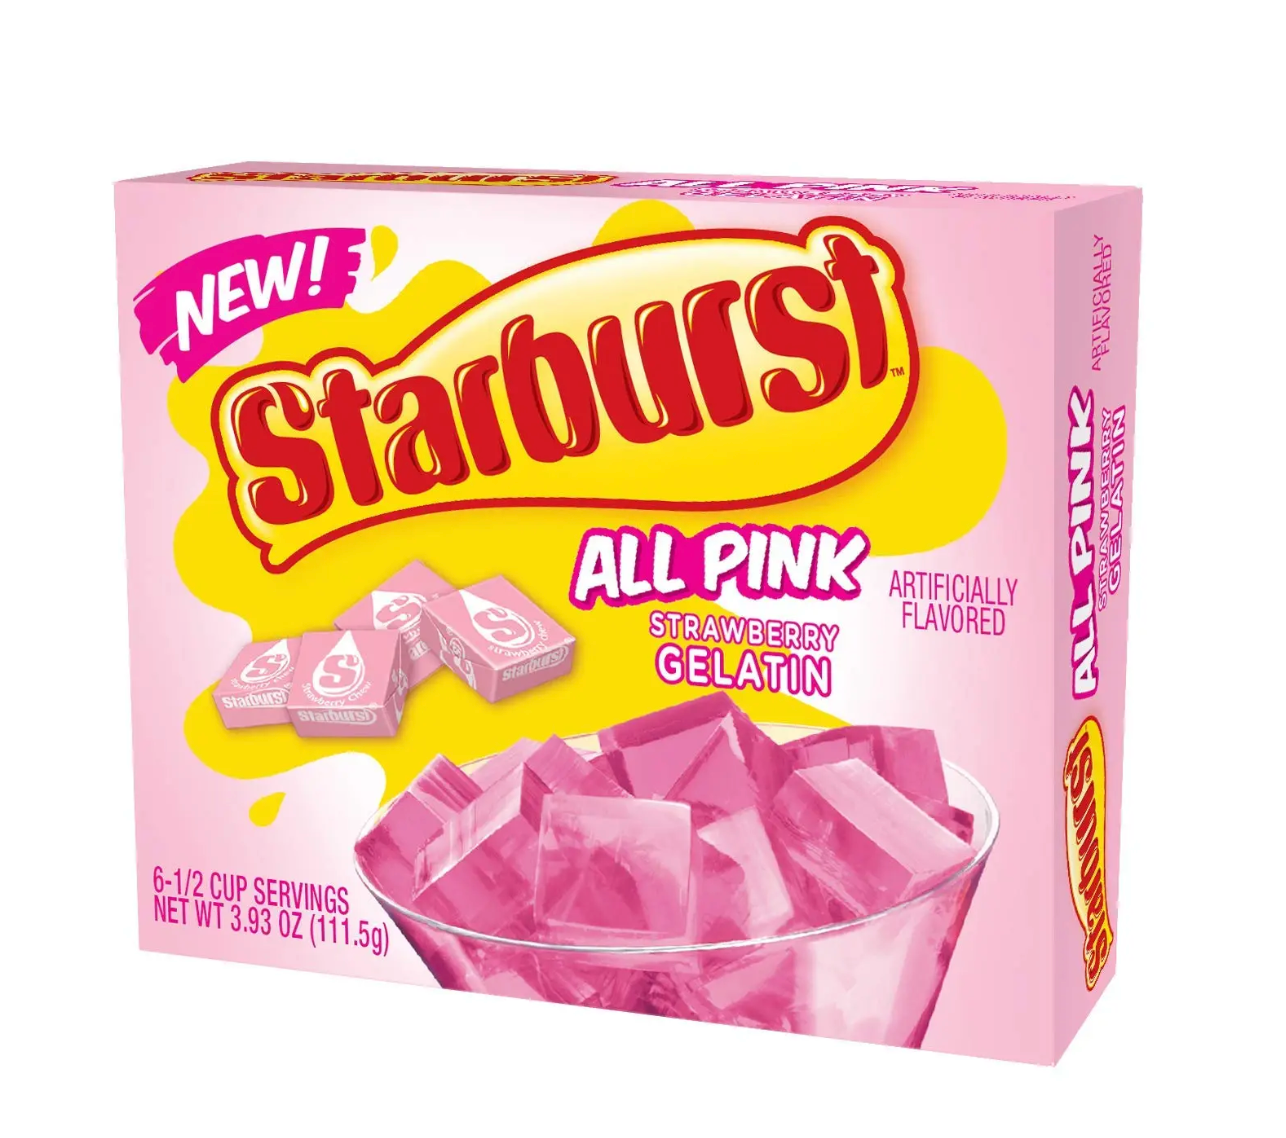 Starburst - All Pink Strawberry Gelatin - 111g